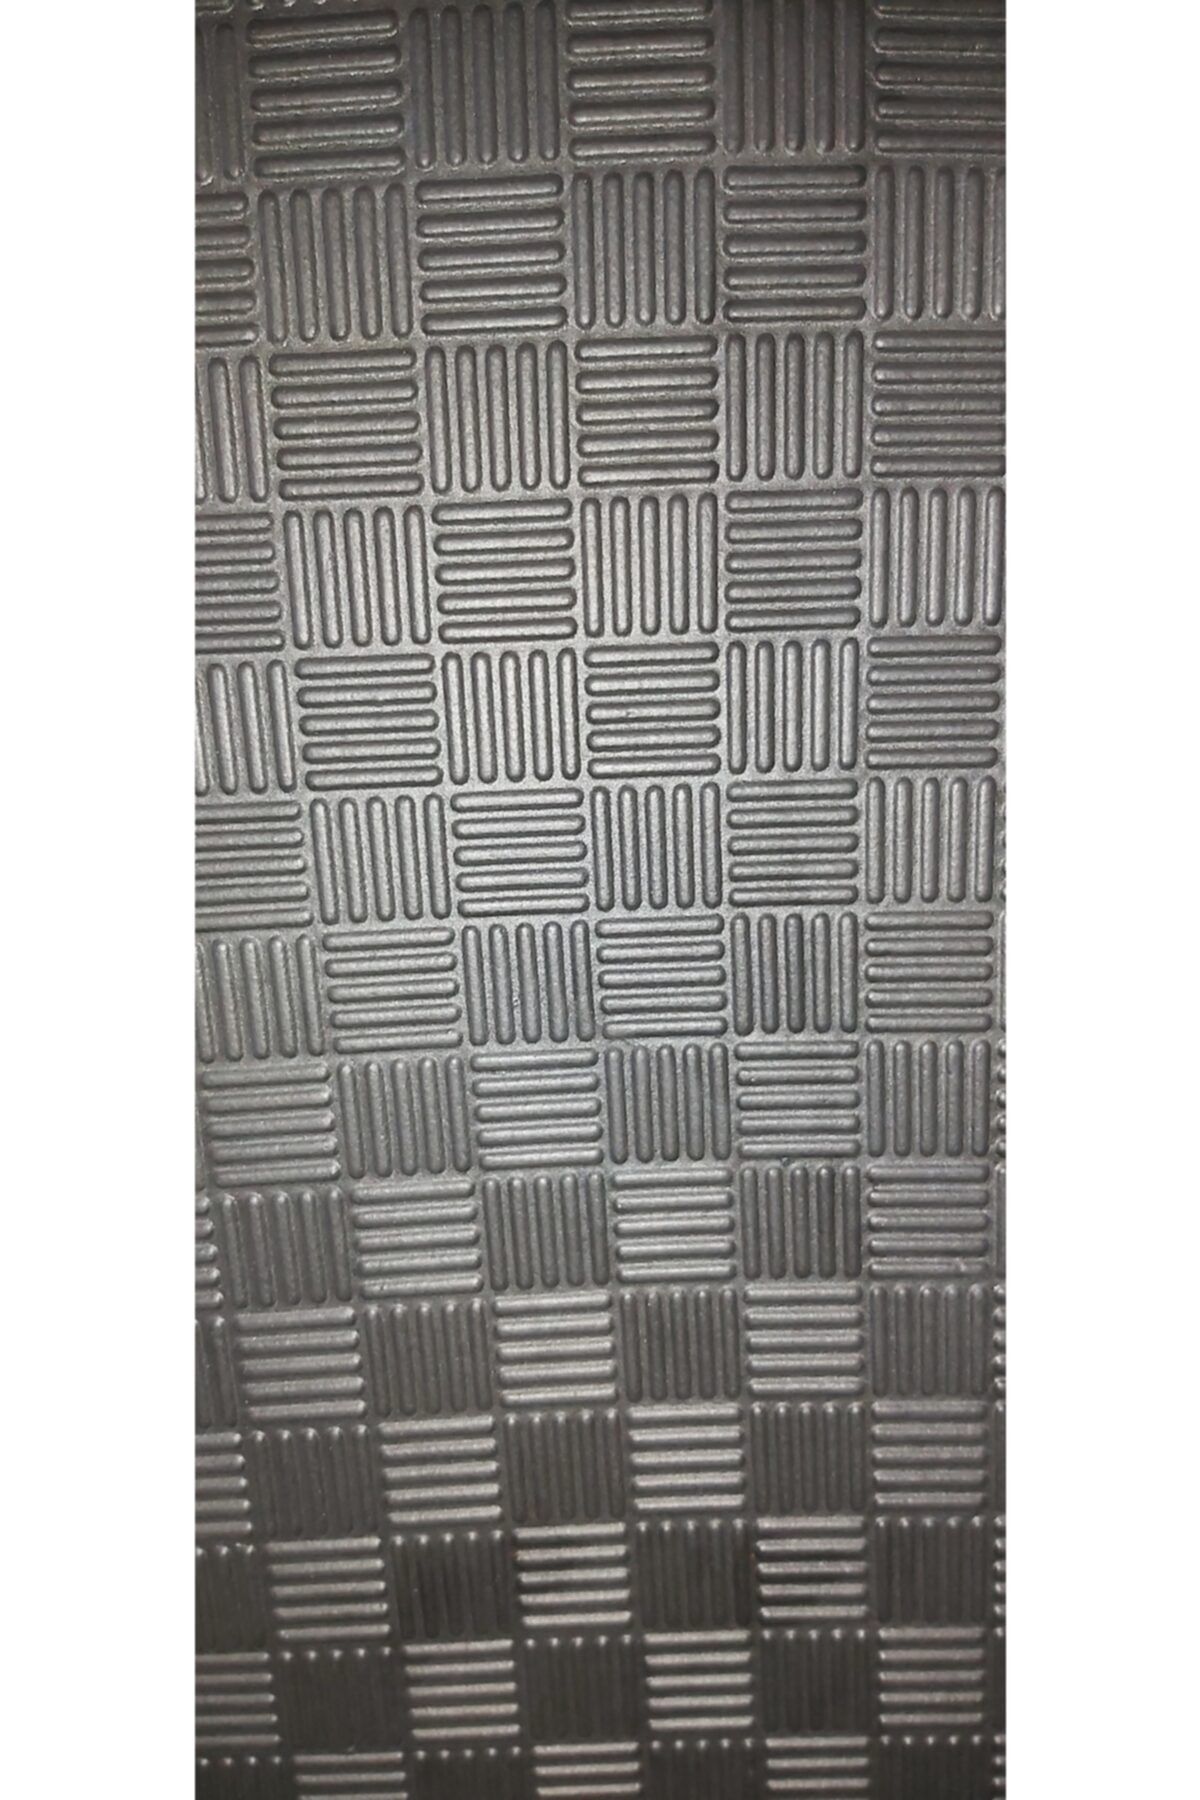 KIVRAK 100x100 cm 13 mm Thickness Good Quality Tatami Floor Mat